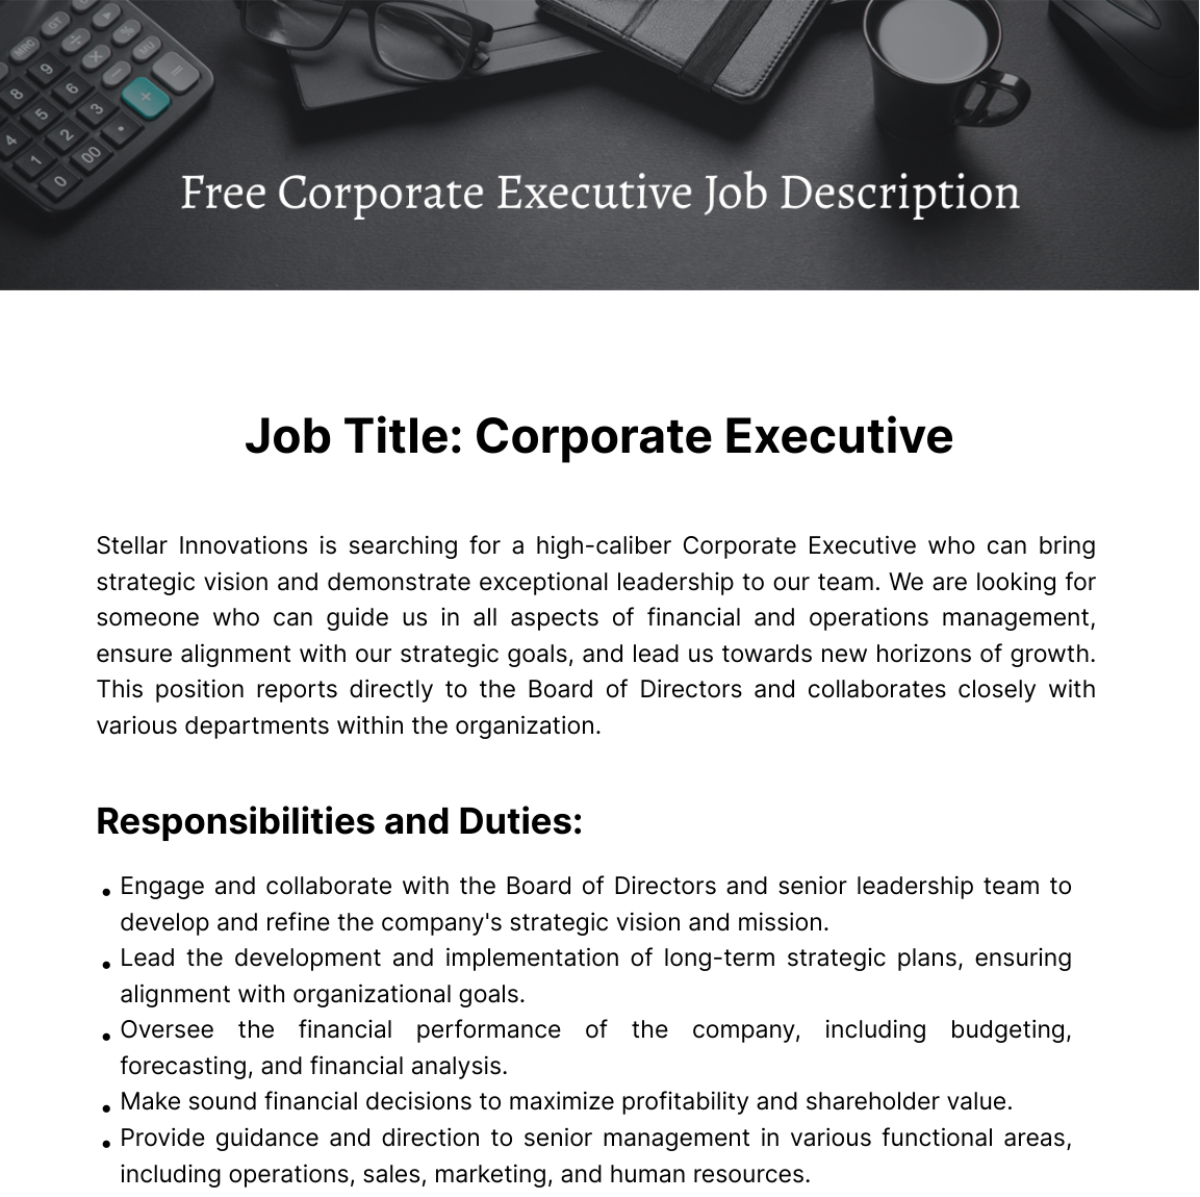 Free Corporate Executive Job Description Template